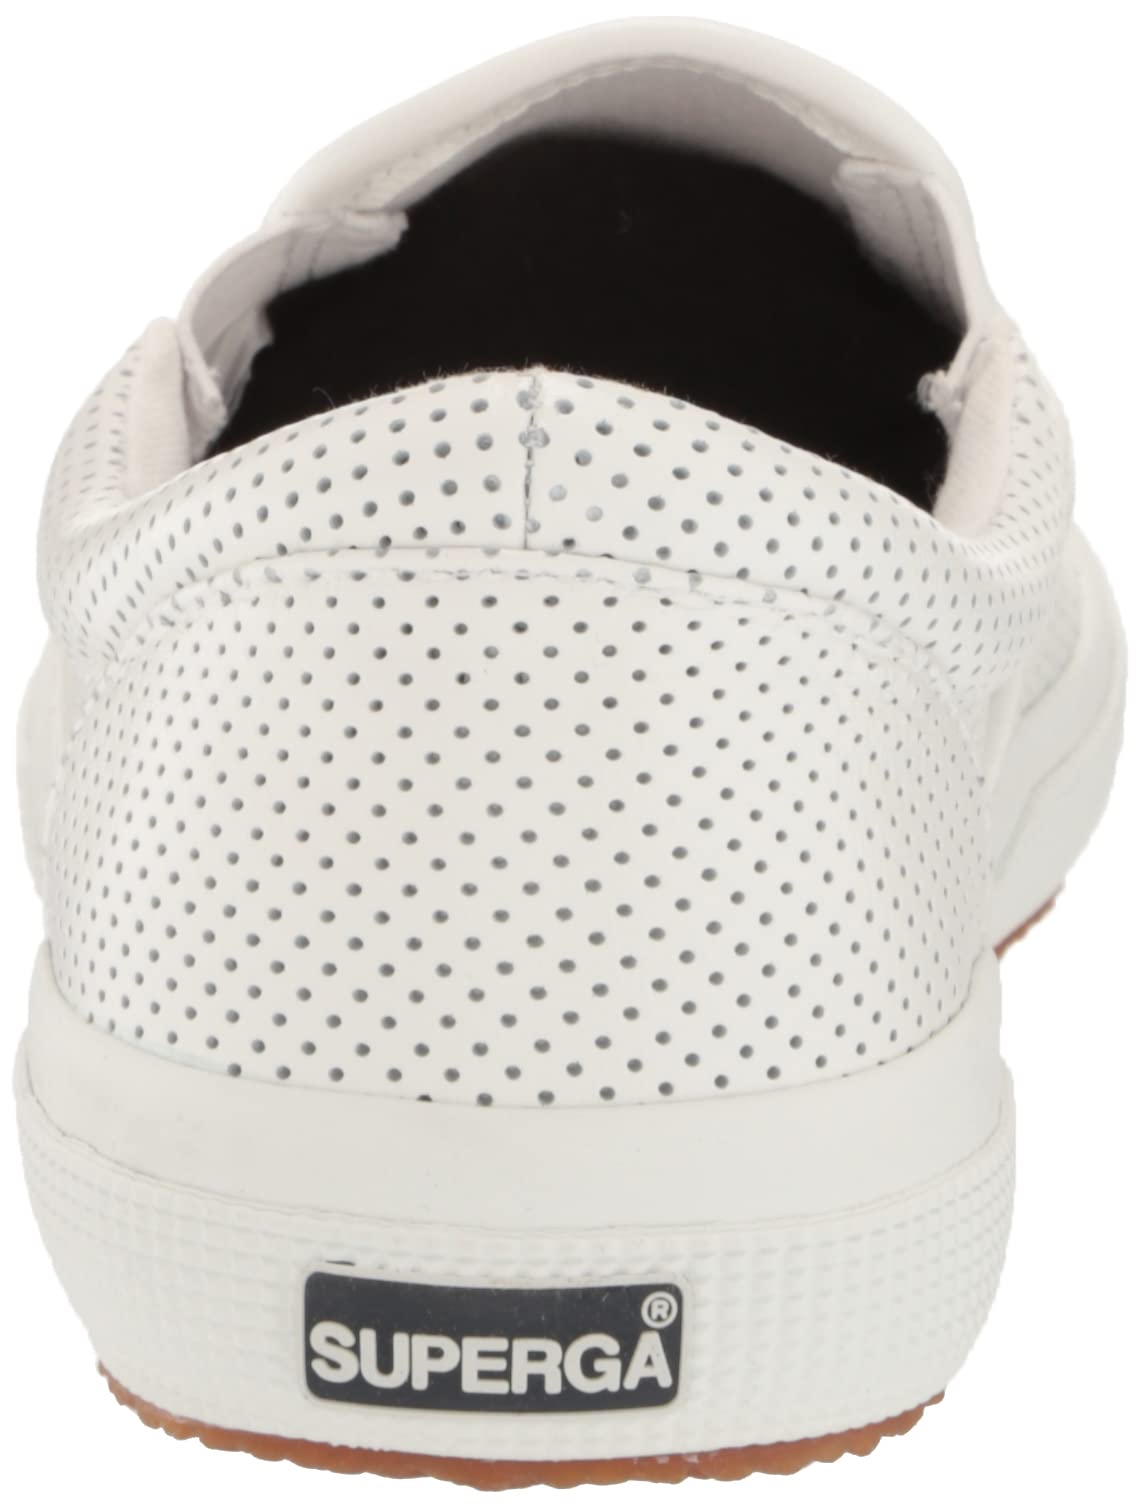 Superga Unisex-Adult S7131hw Sneaker